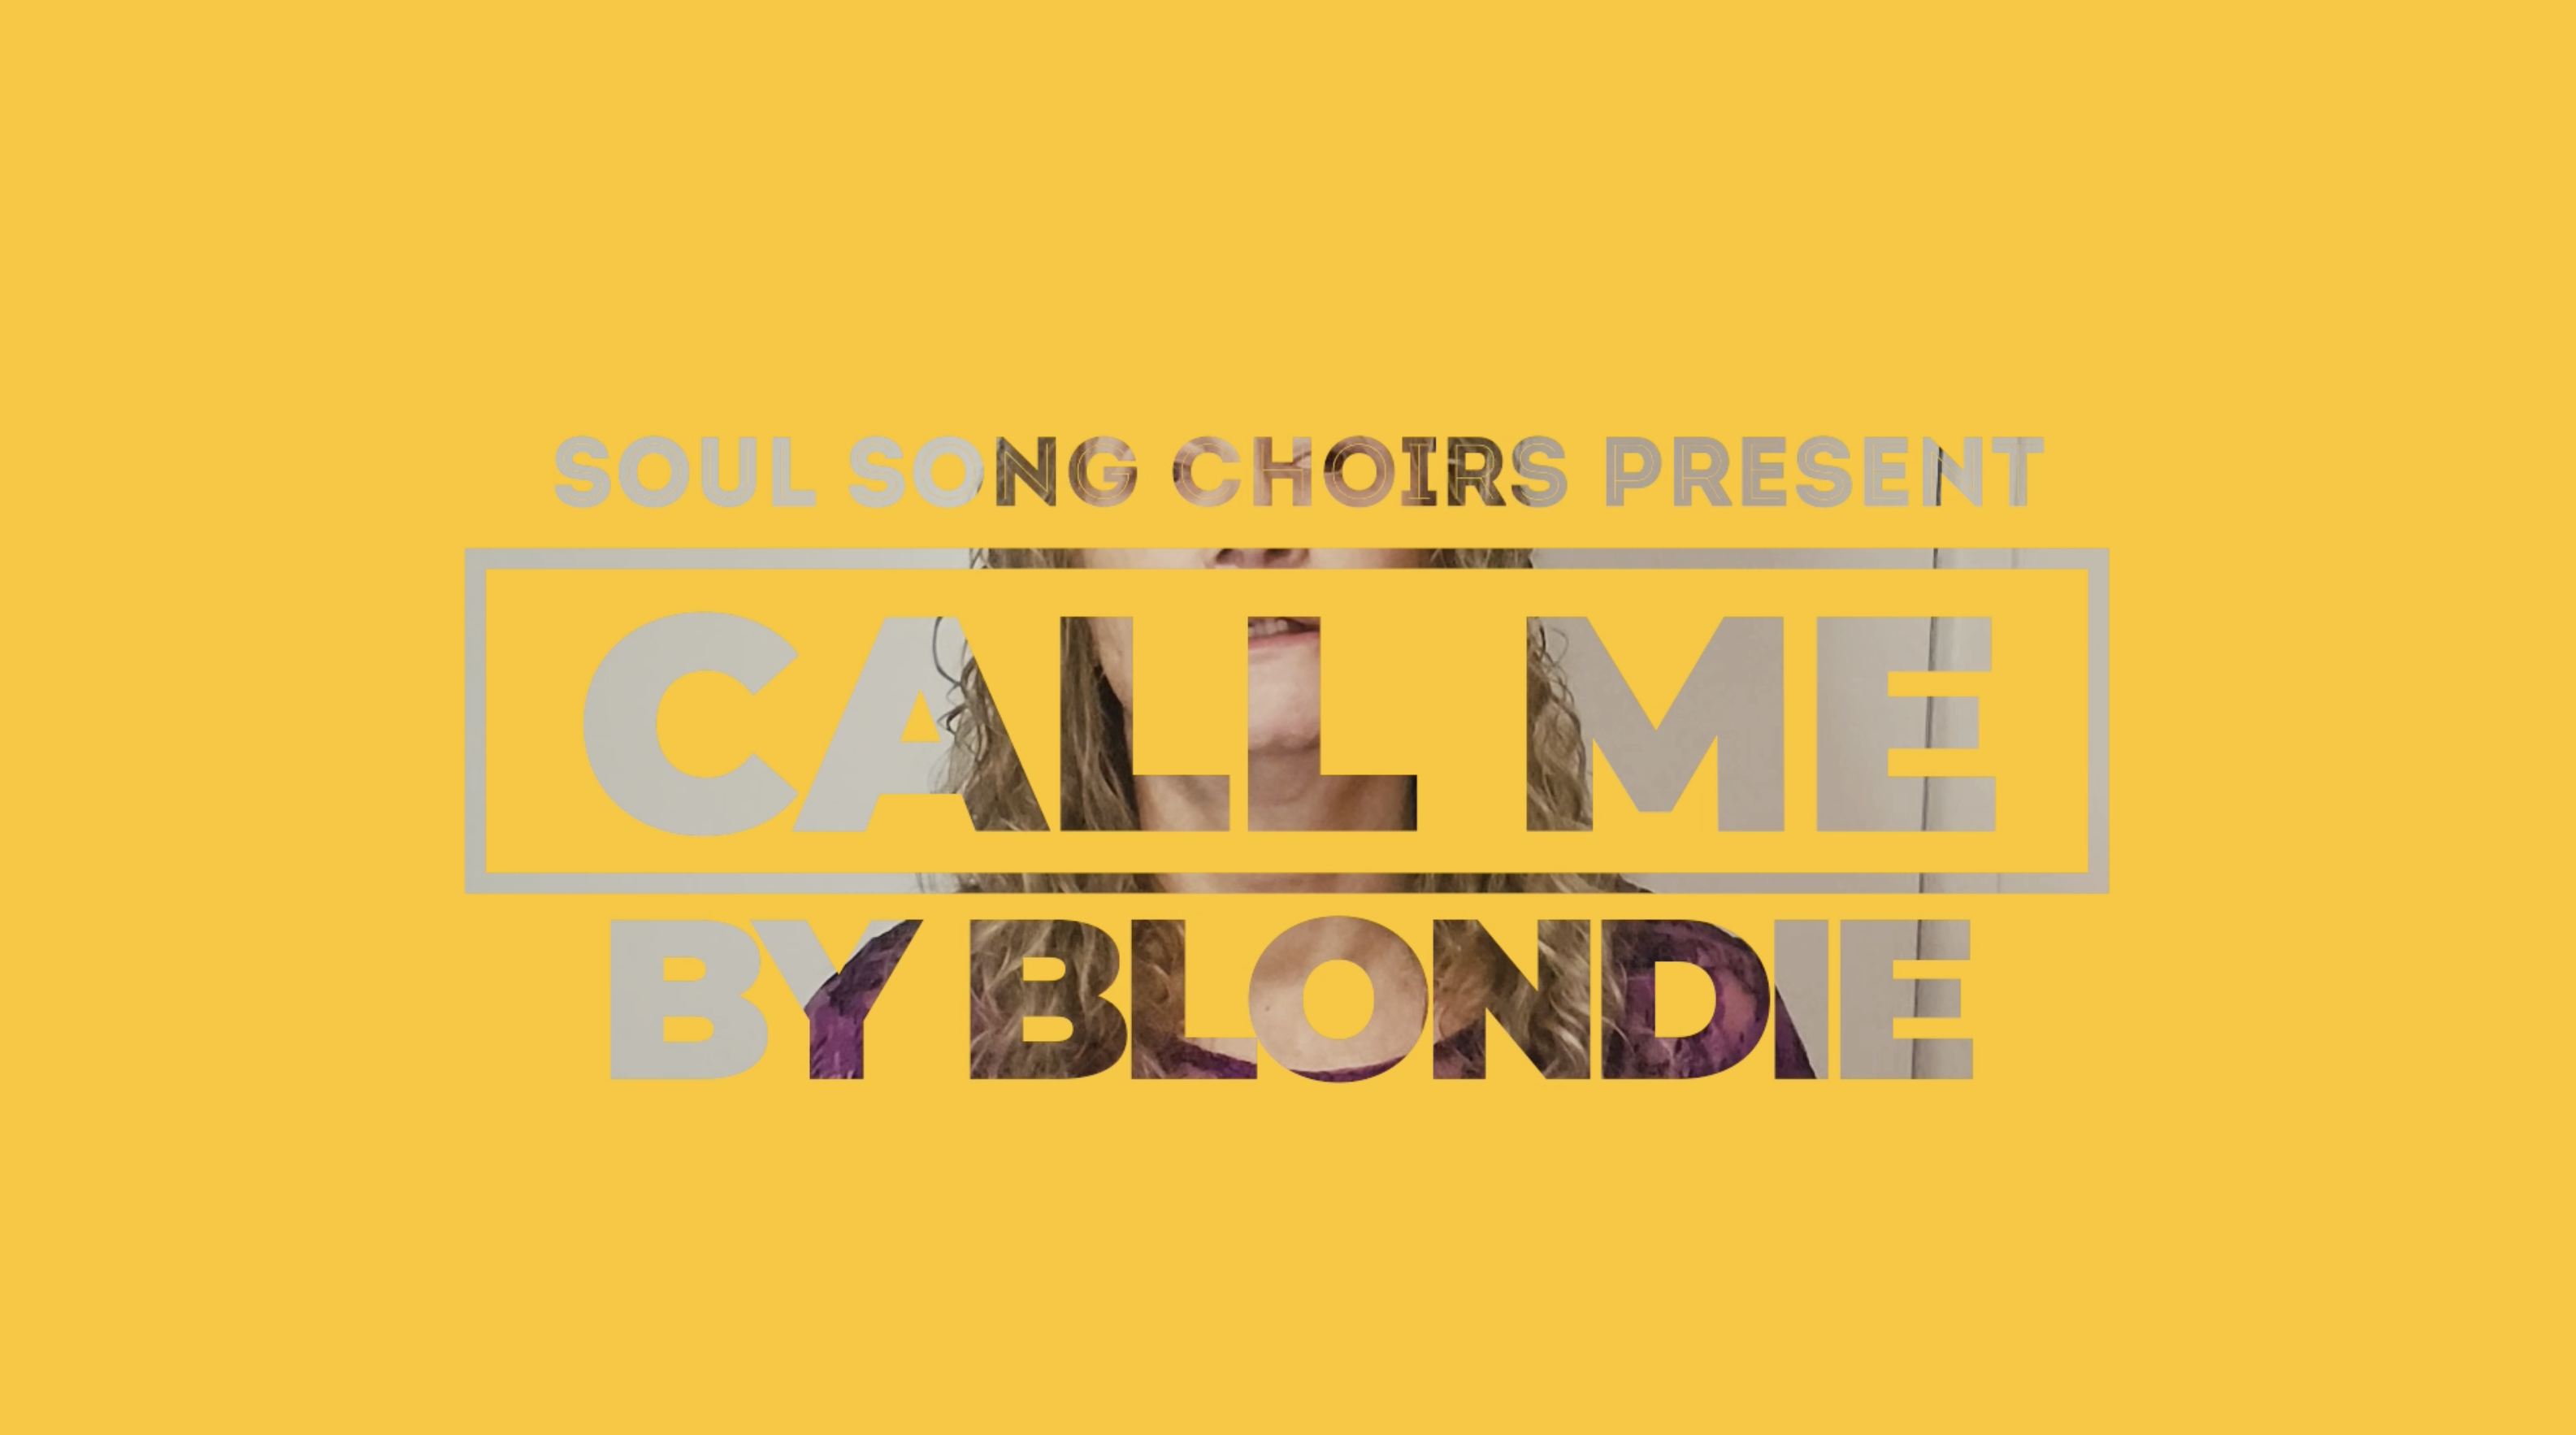 Call Me - Virtual Choir